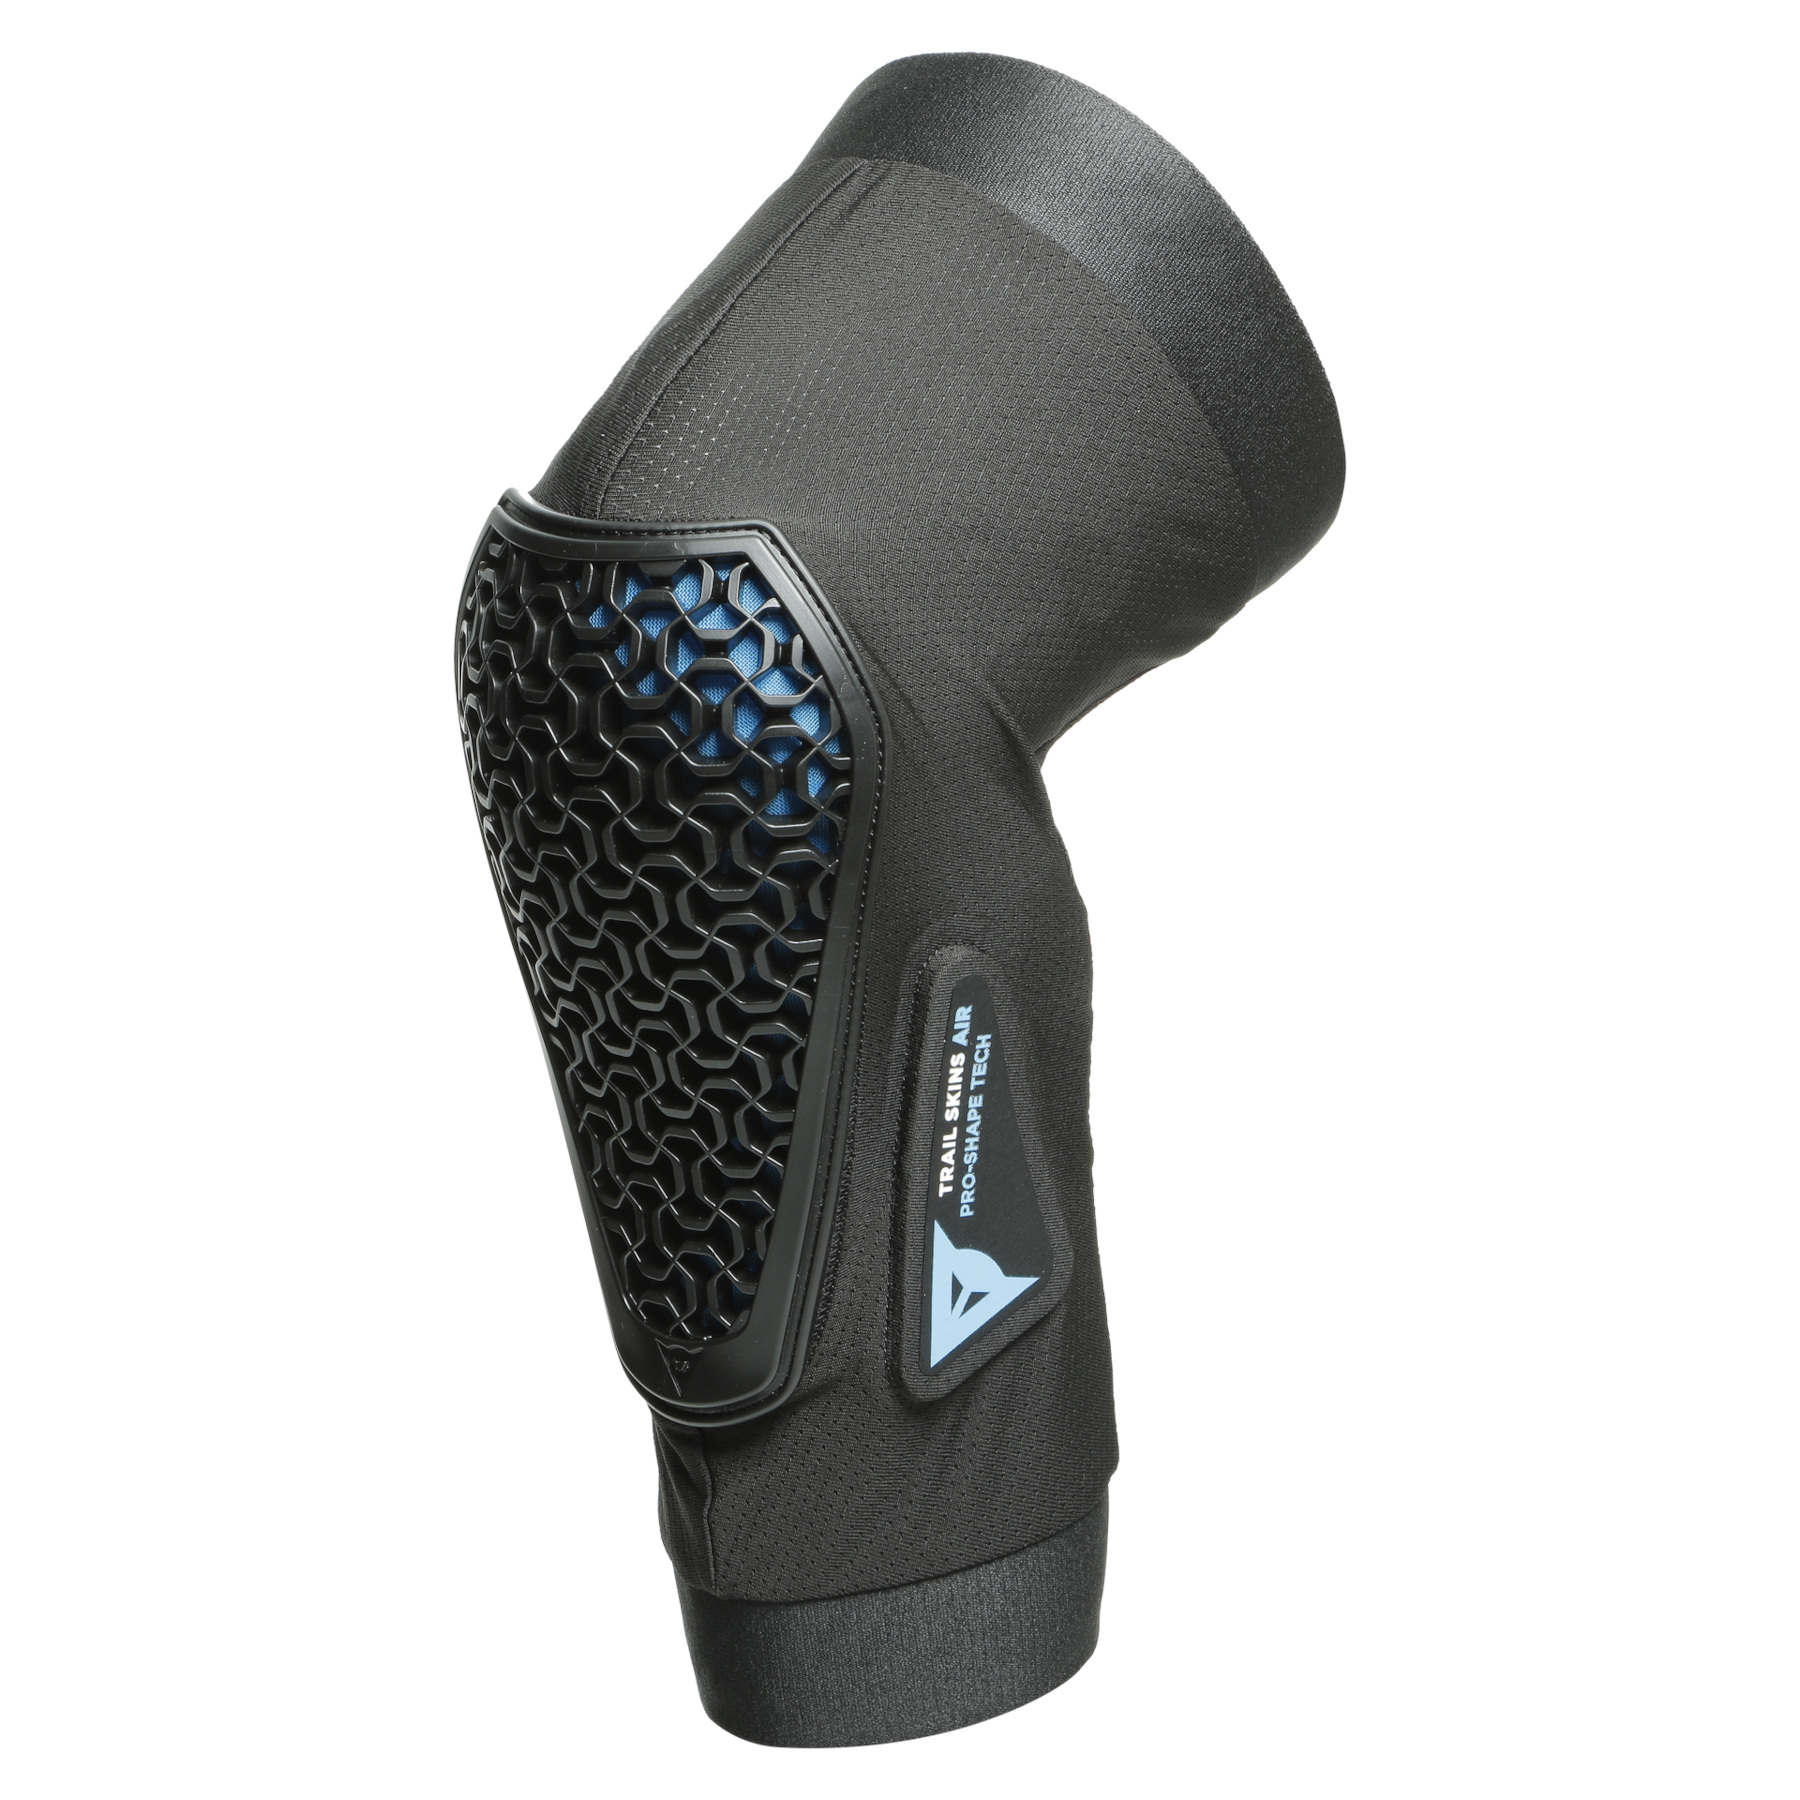 Produktbild von Dainese Trail Skins Air Knieprotektoren - schwarz